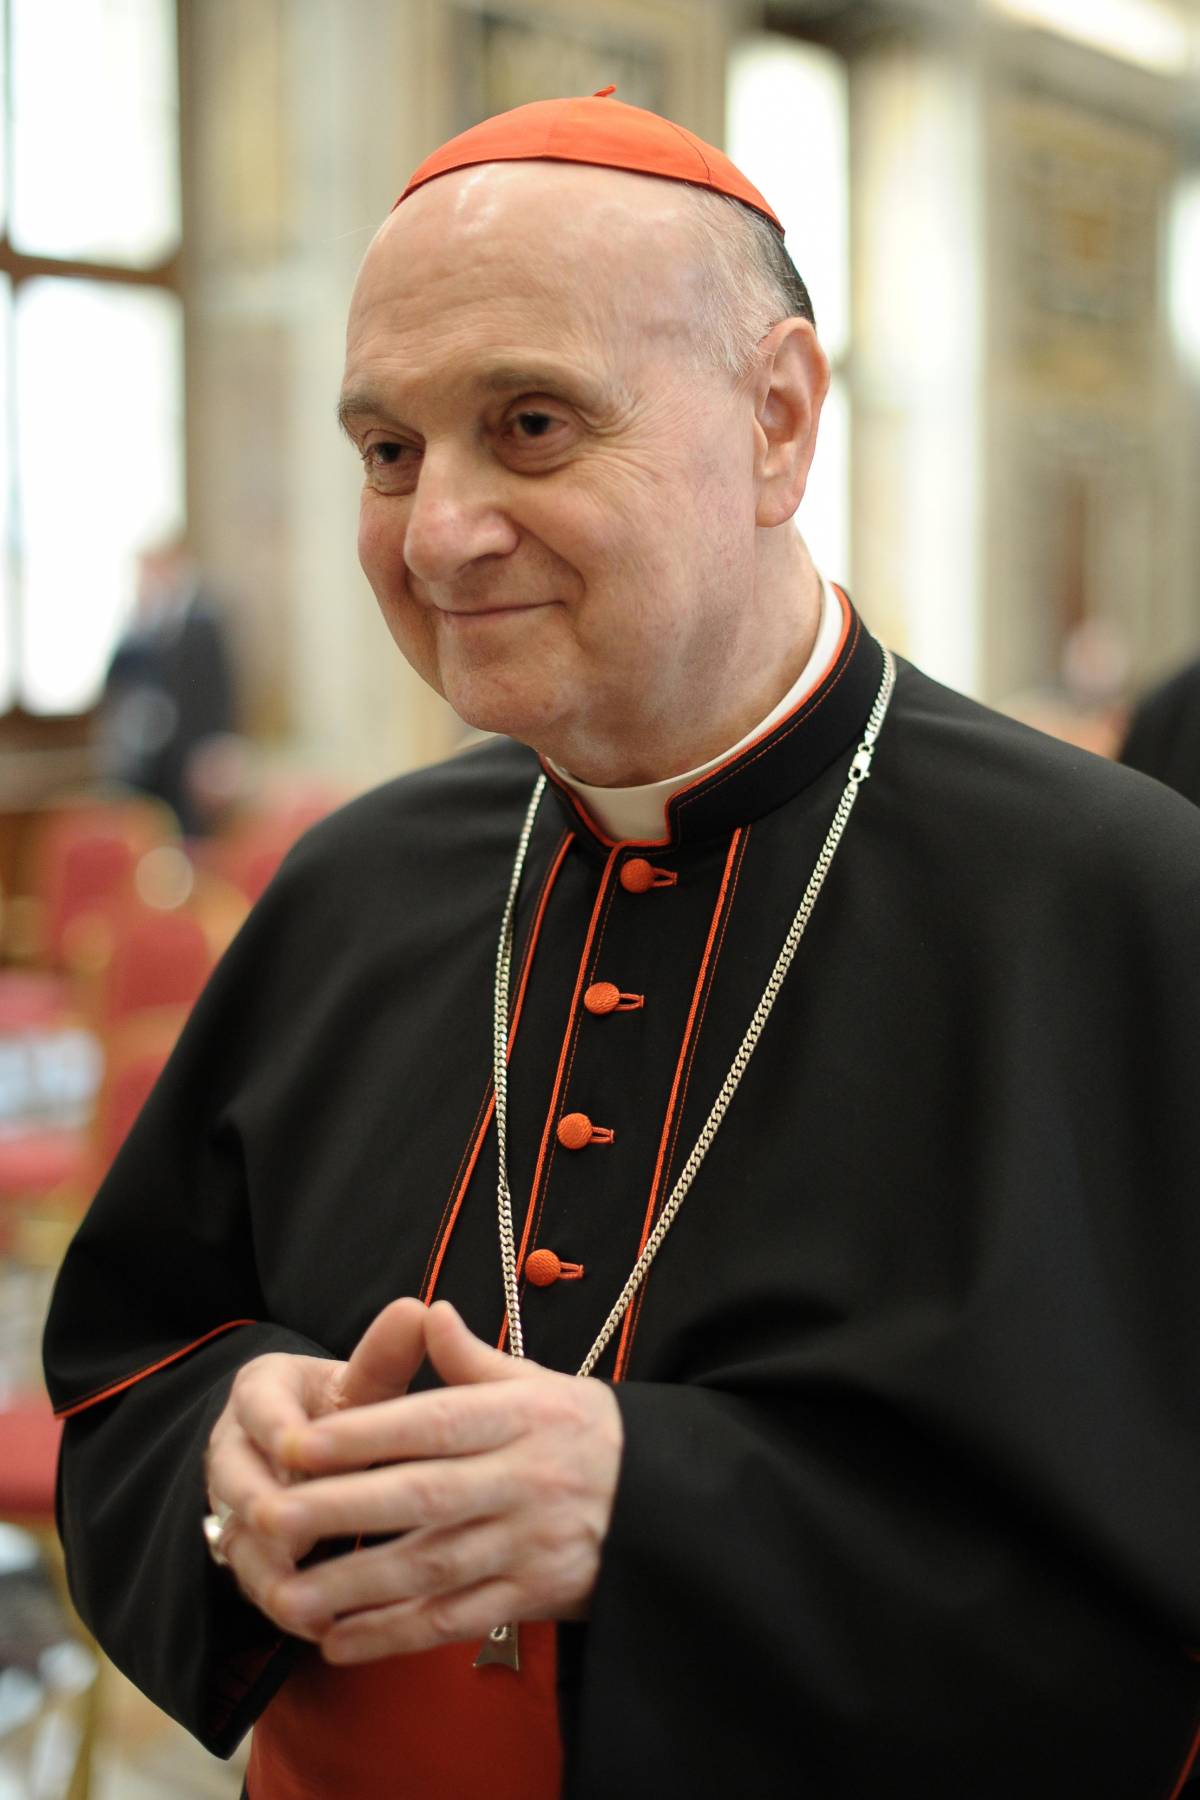 "Abbiamo sempre celebrato per i pochi cittadini del Vaticano"